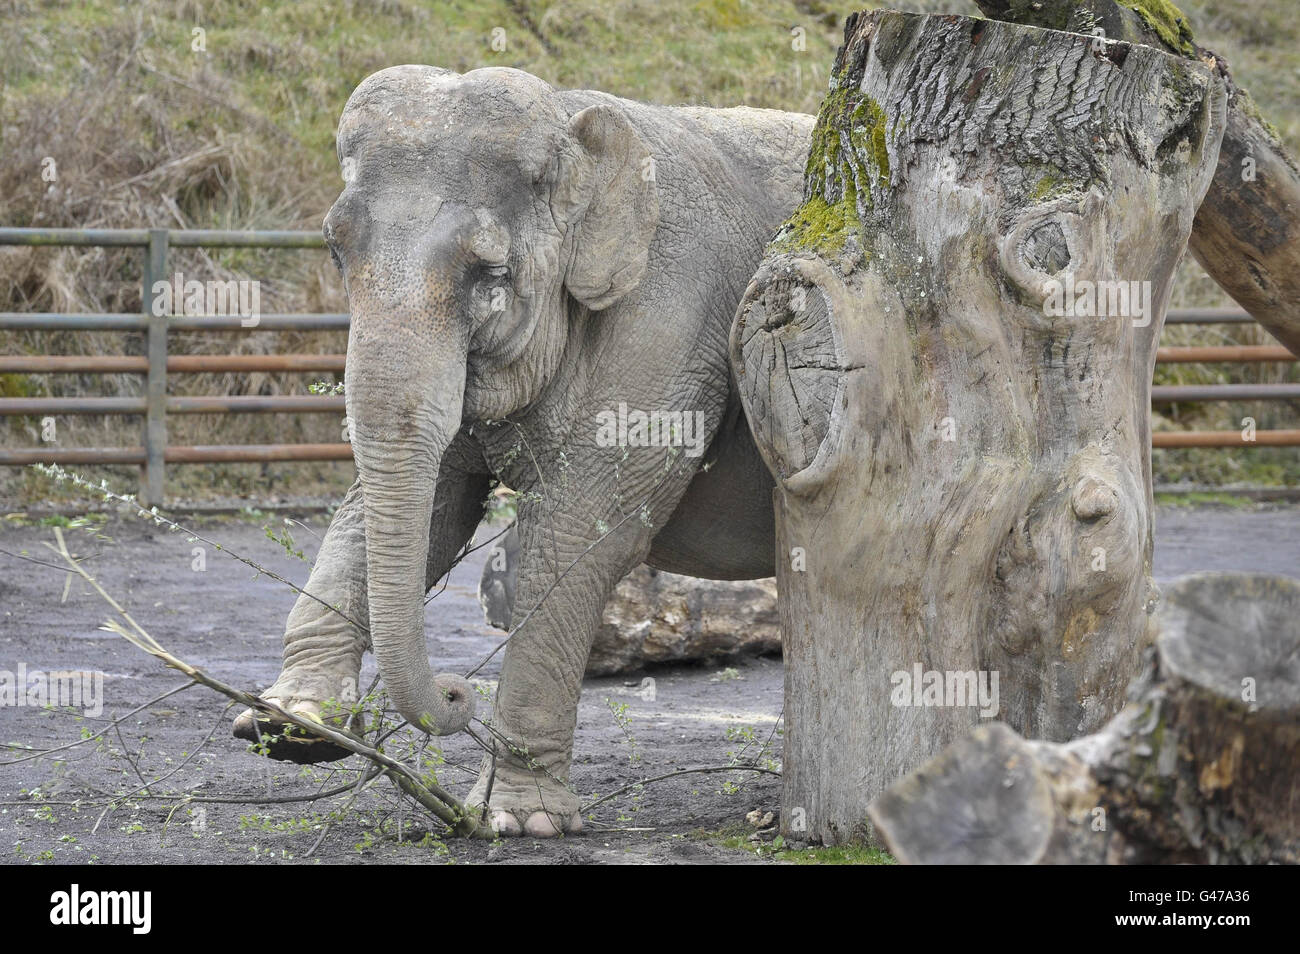 Anne l'éléphant secouru aime manger des branches dans son enceinte au Longleat Safari Park. Banque D'Images